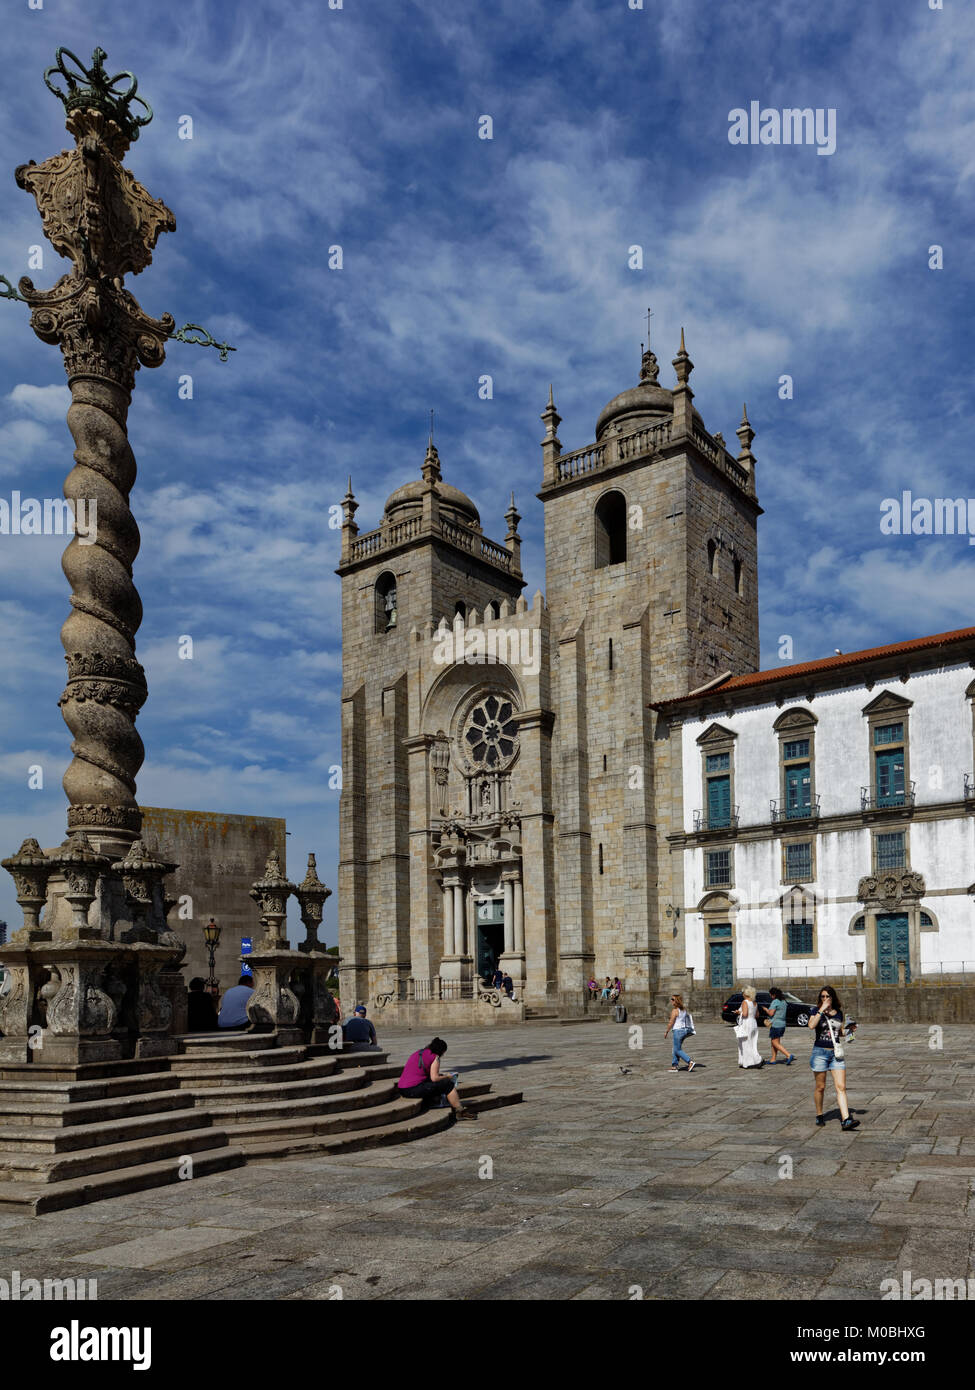 Porto, Portugal - 8 mai 2017 : Les gens en face de la cathédrale de Porto. Construit en 1737, c'est l'un des plus importants monuments de style roman local Banque D'Images